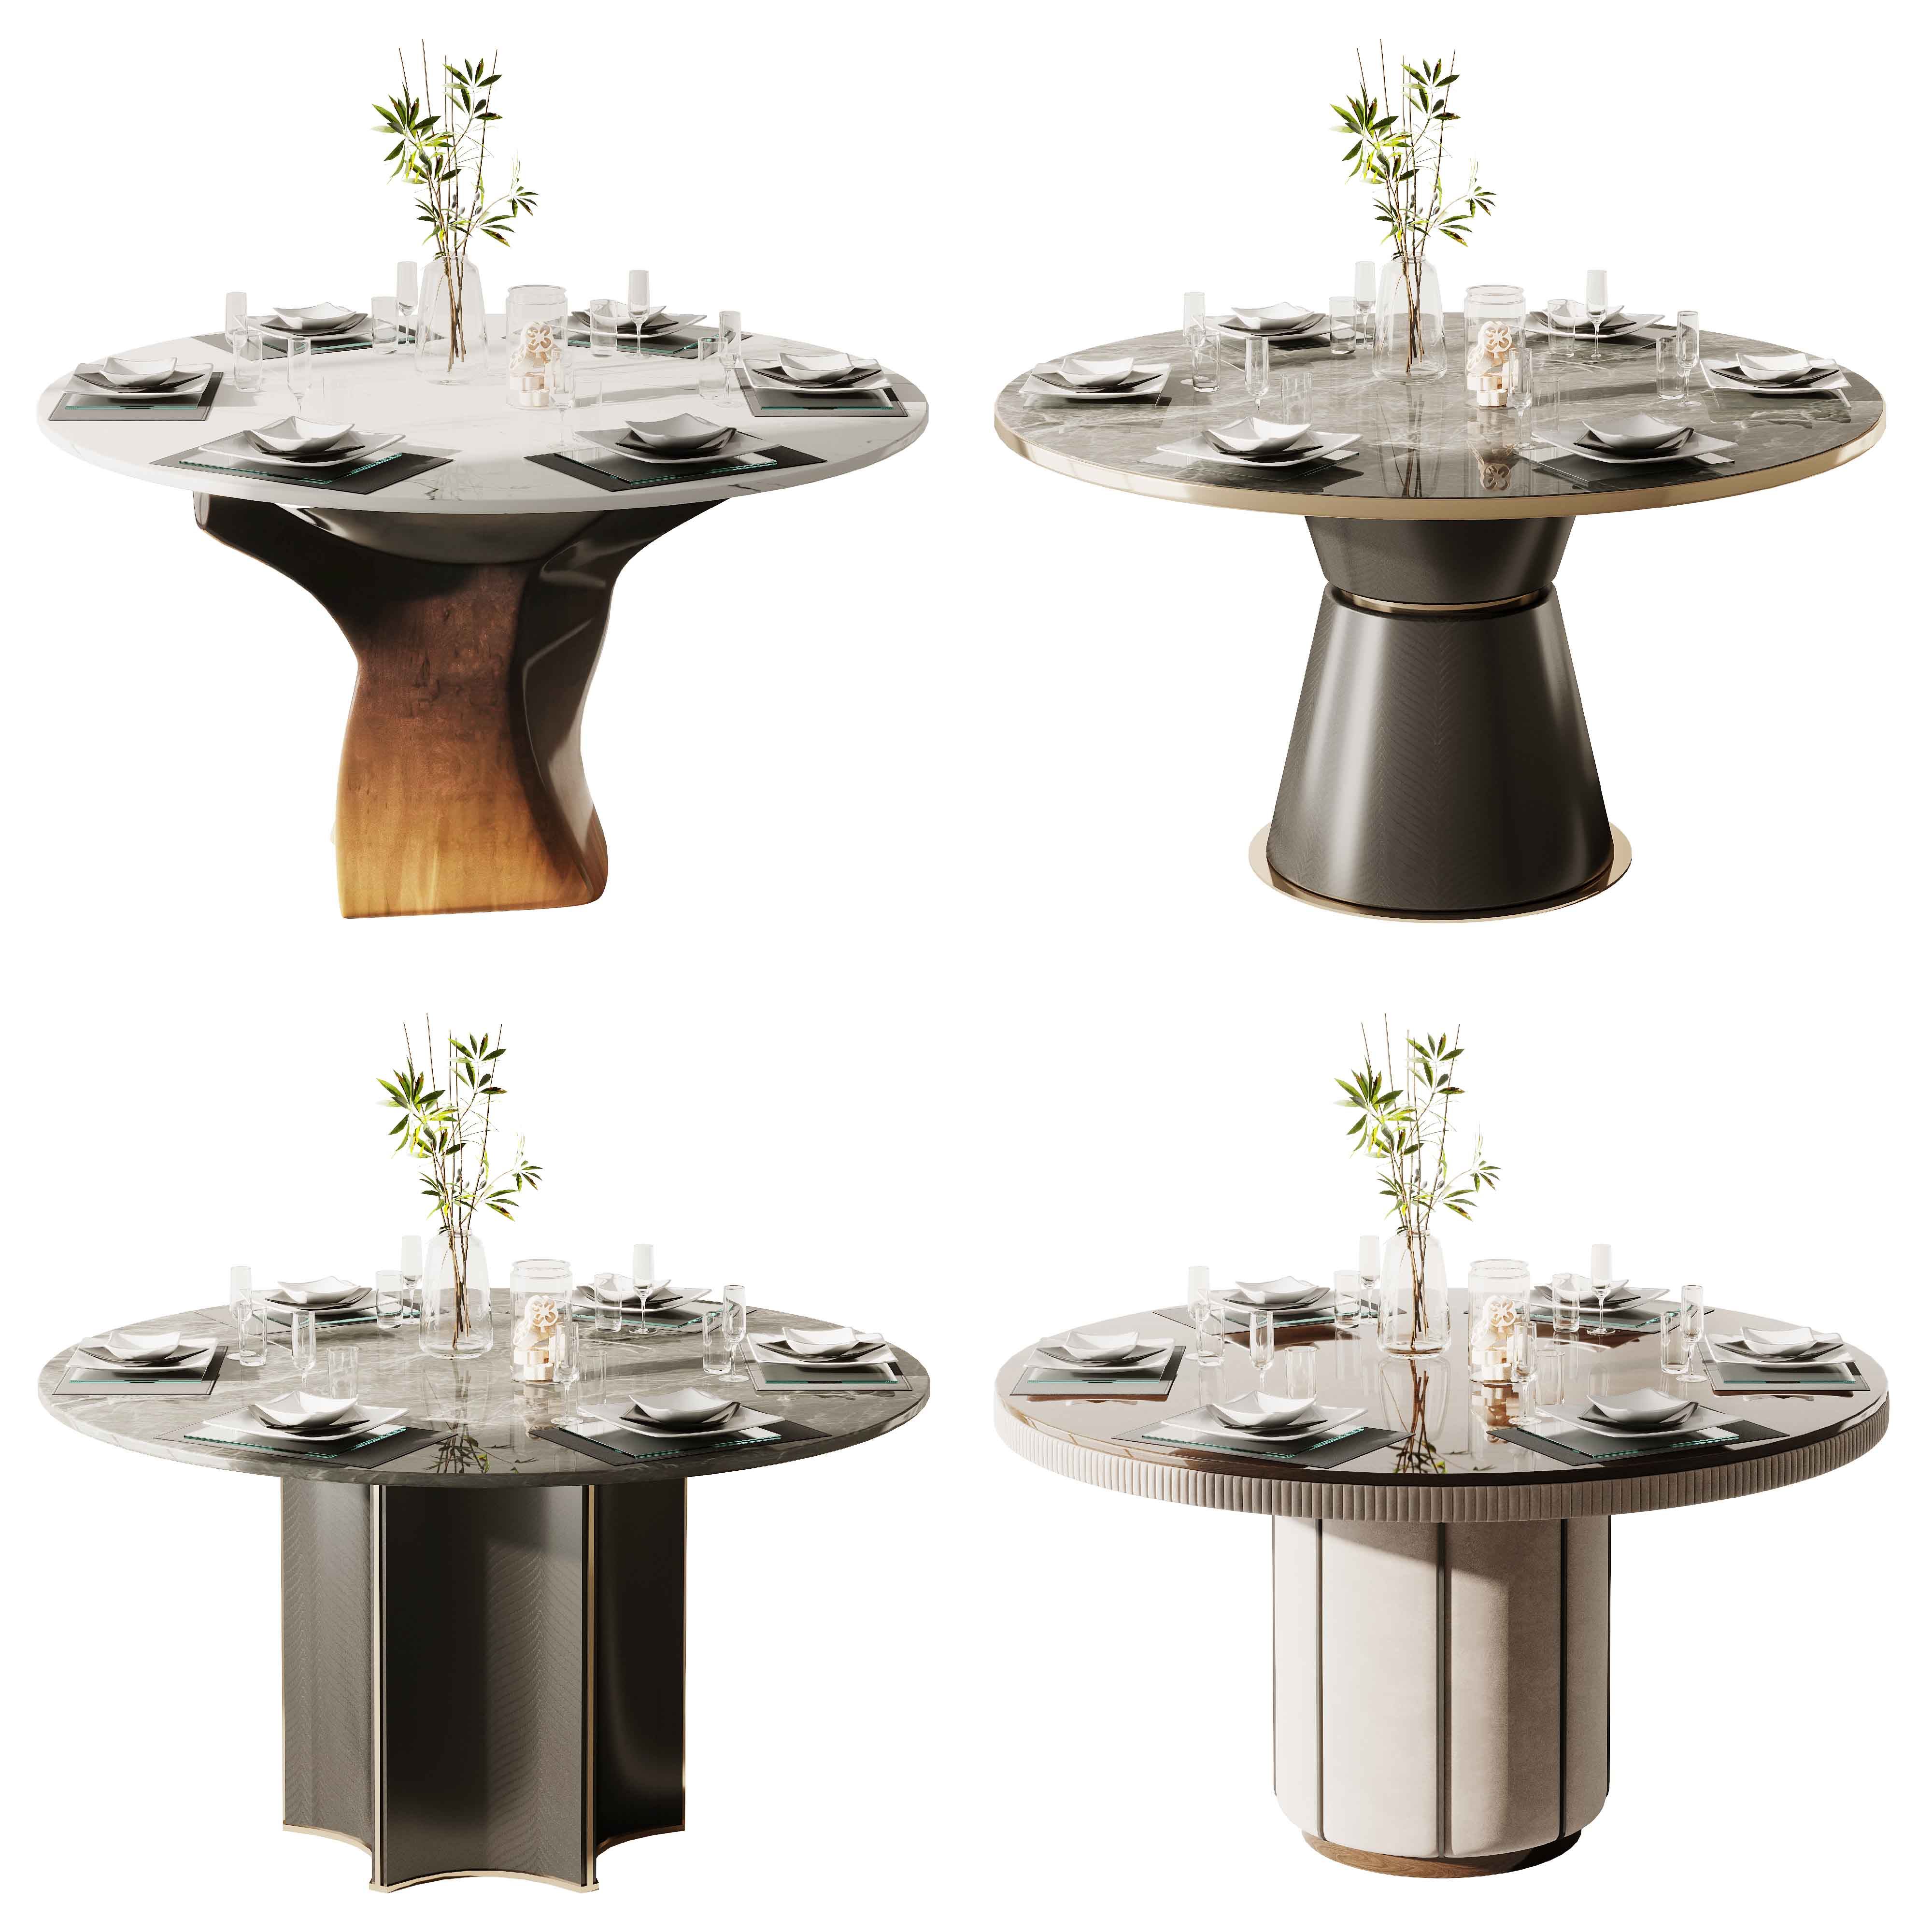 10现代圆形餐桌餐具3d模型下载